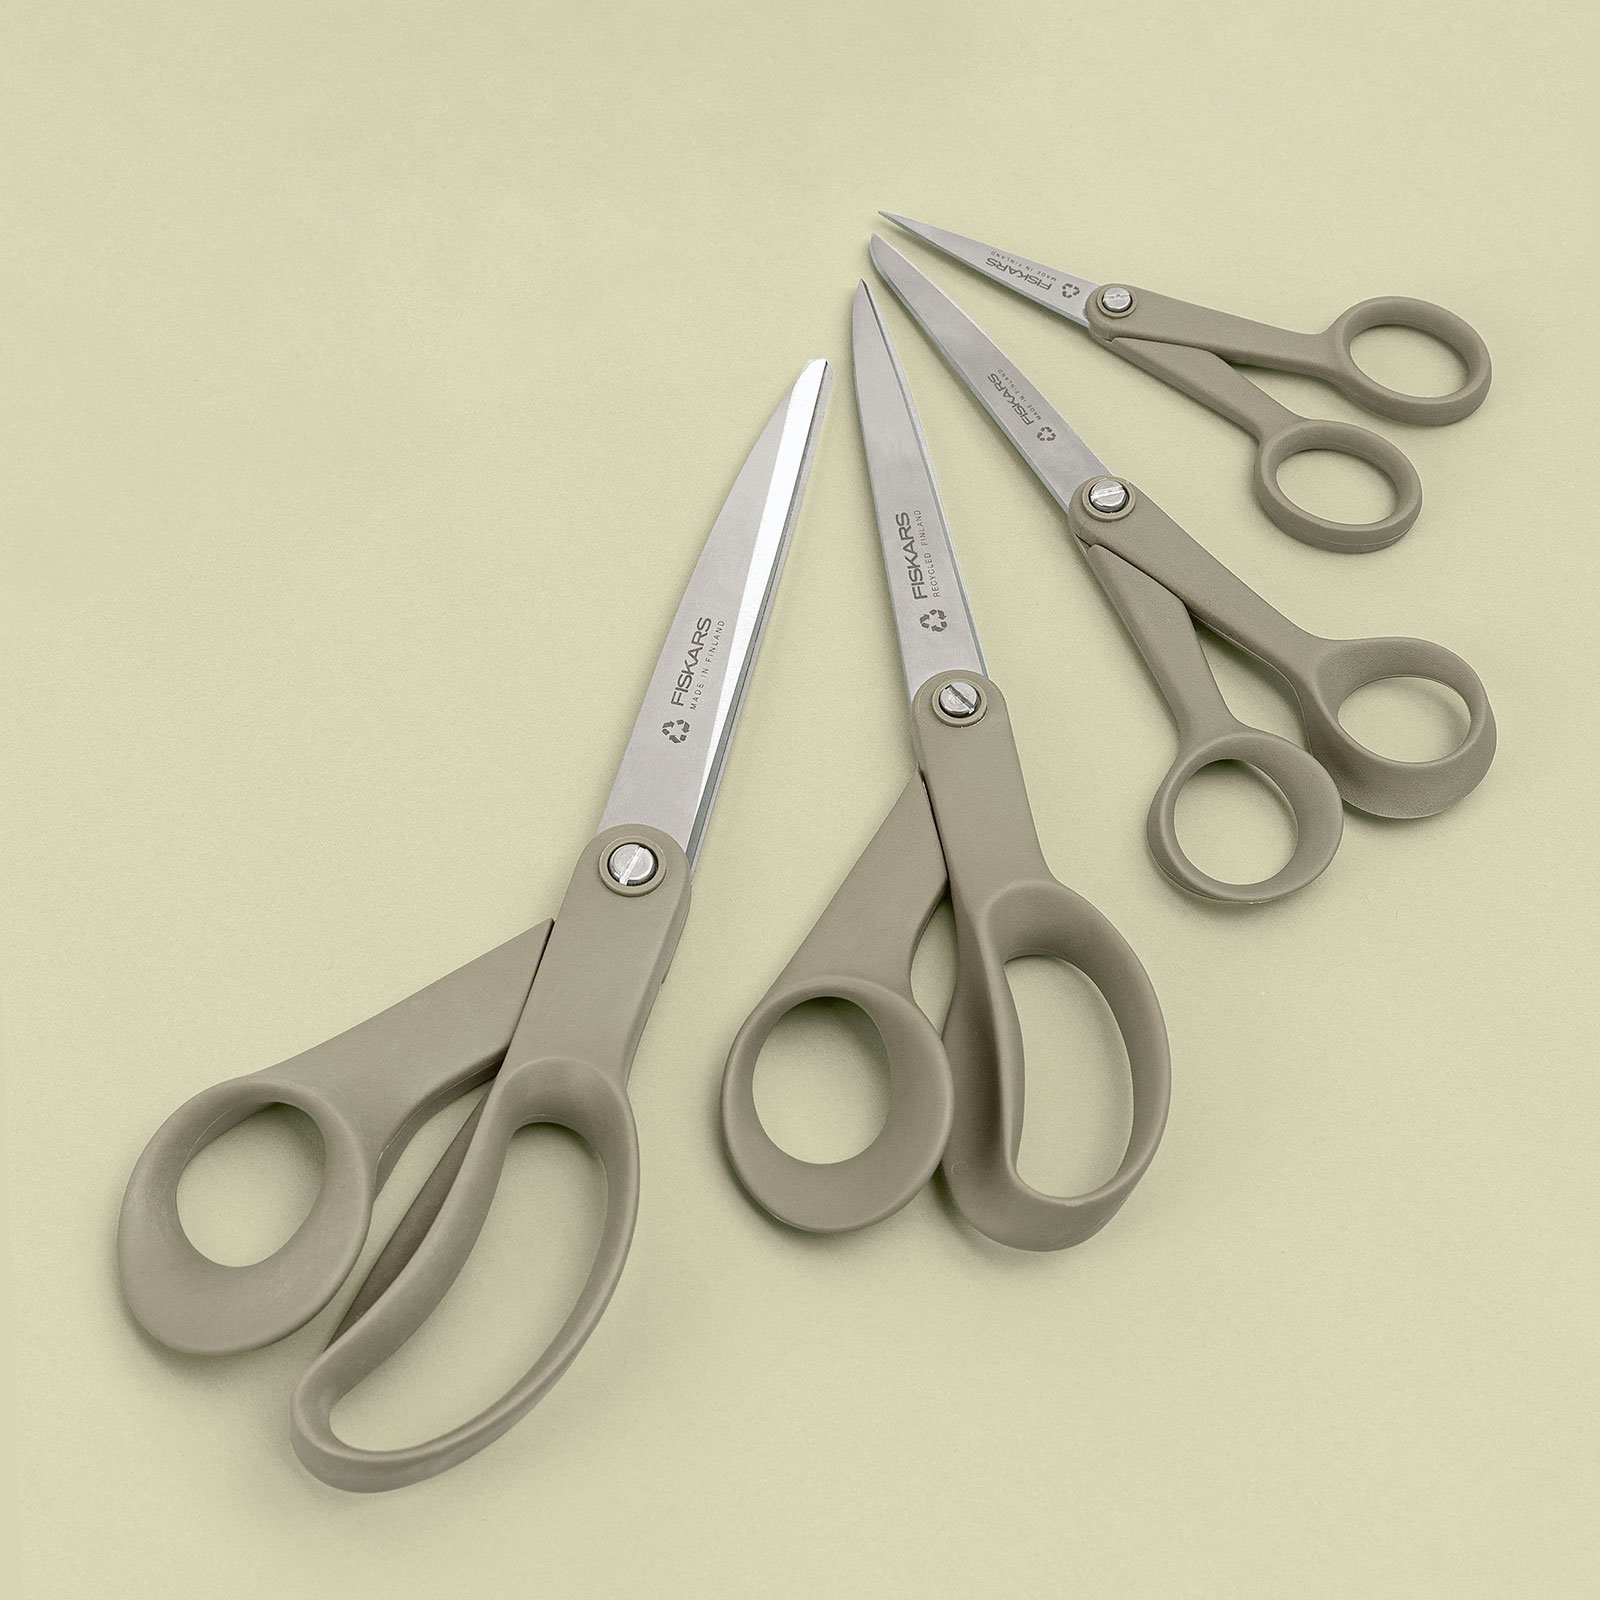 Fiskars ReNew universal scissors 24cm 42030_42031_42032_42033_sskit